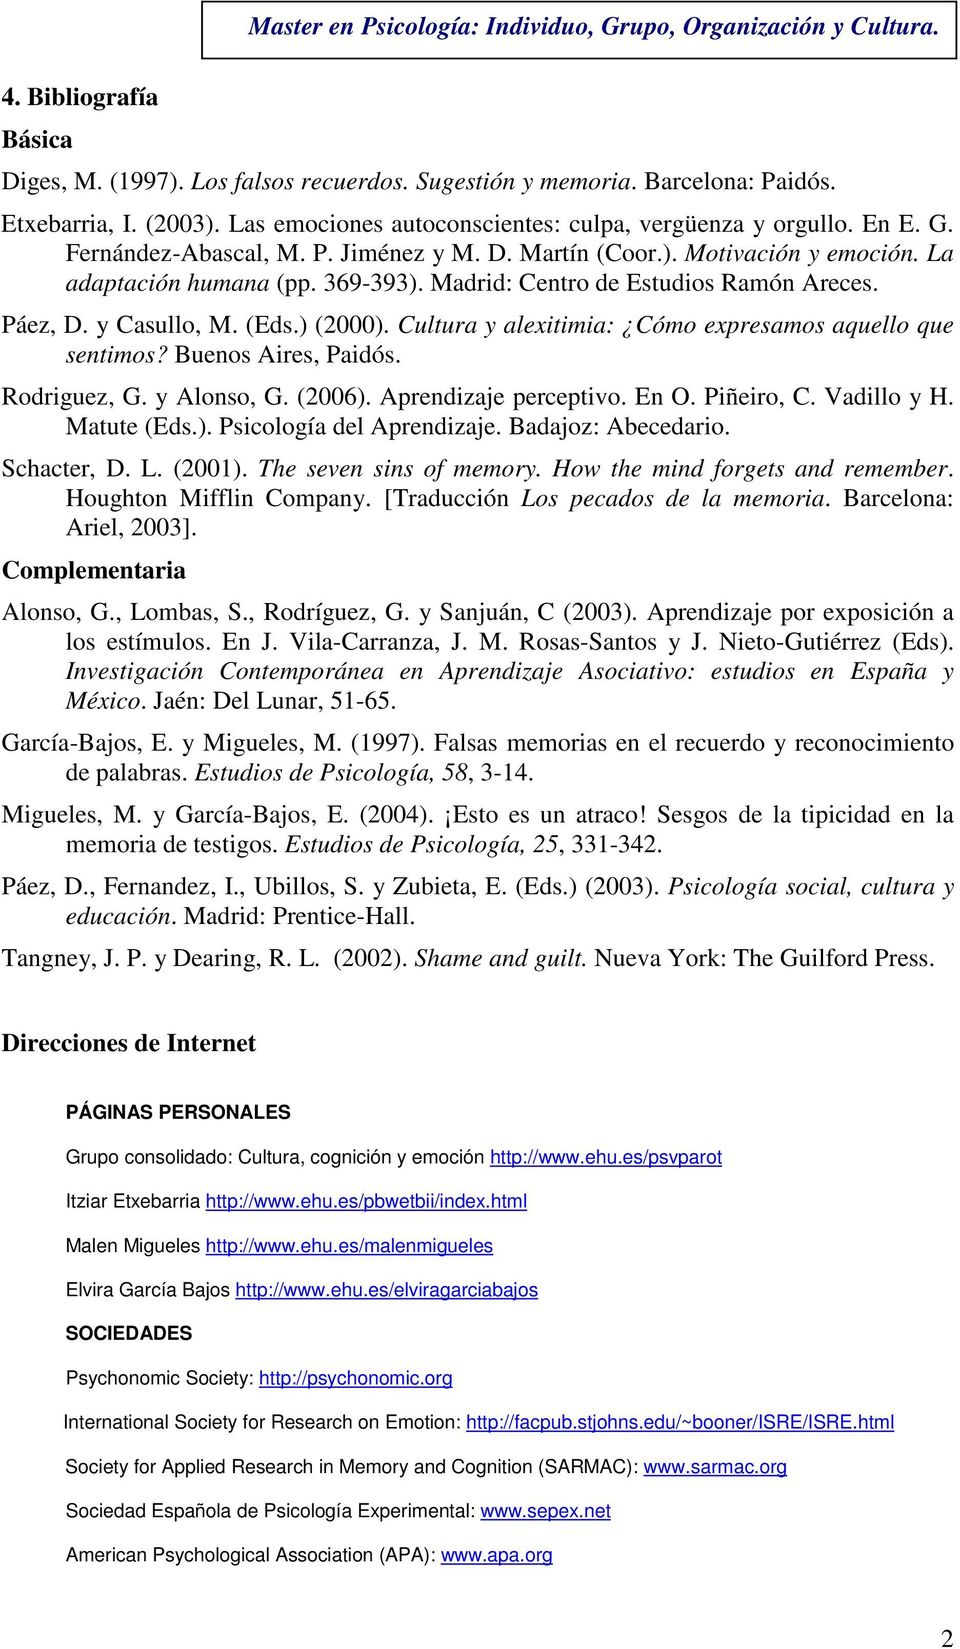 Cultura y alexitimia: Cómo expresamos aquello que sentimos? Buenos Aires, Paidós. Rodriguez, G. y Alonso, G. (2006). Aprendizaje perceptivo. En O. Piñeiro, C. Vadillo y H. Matute (Eds.). Psicología del Aprendizaje.